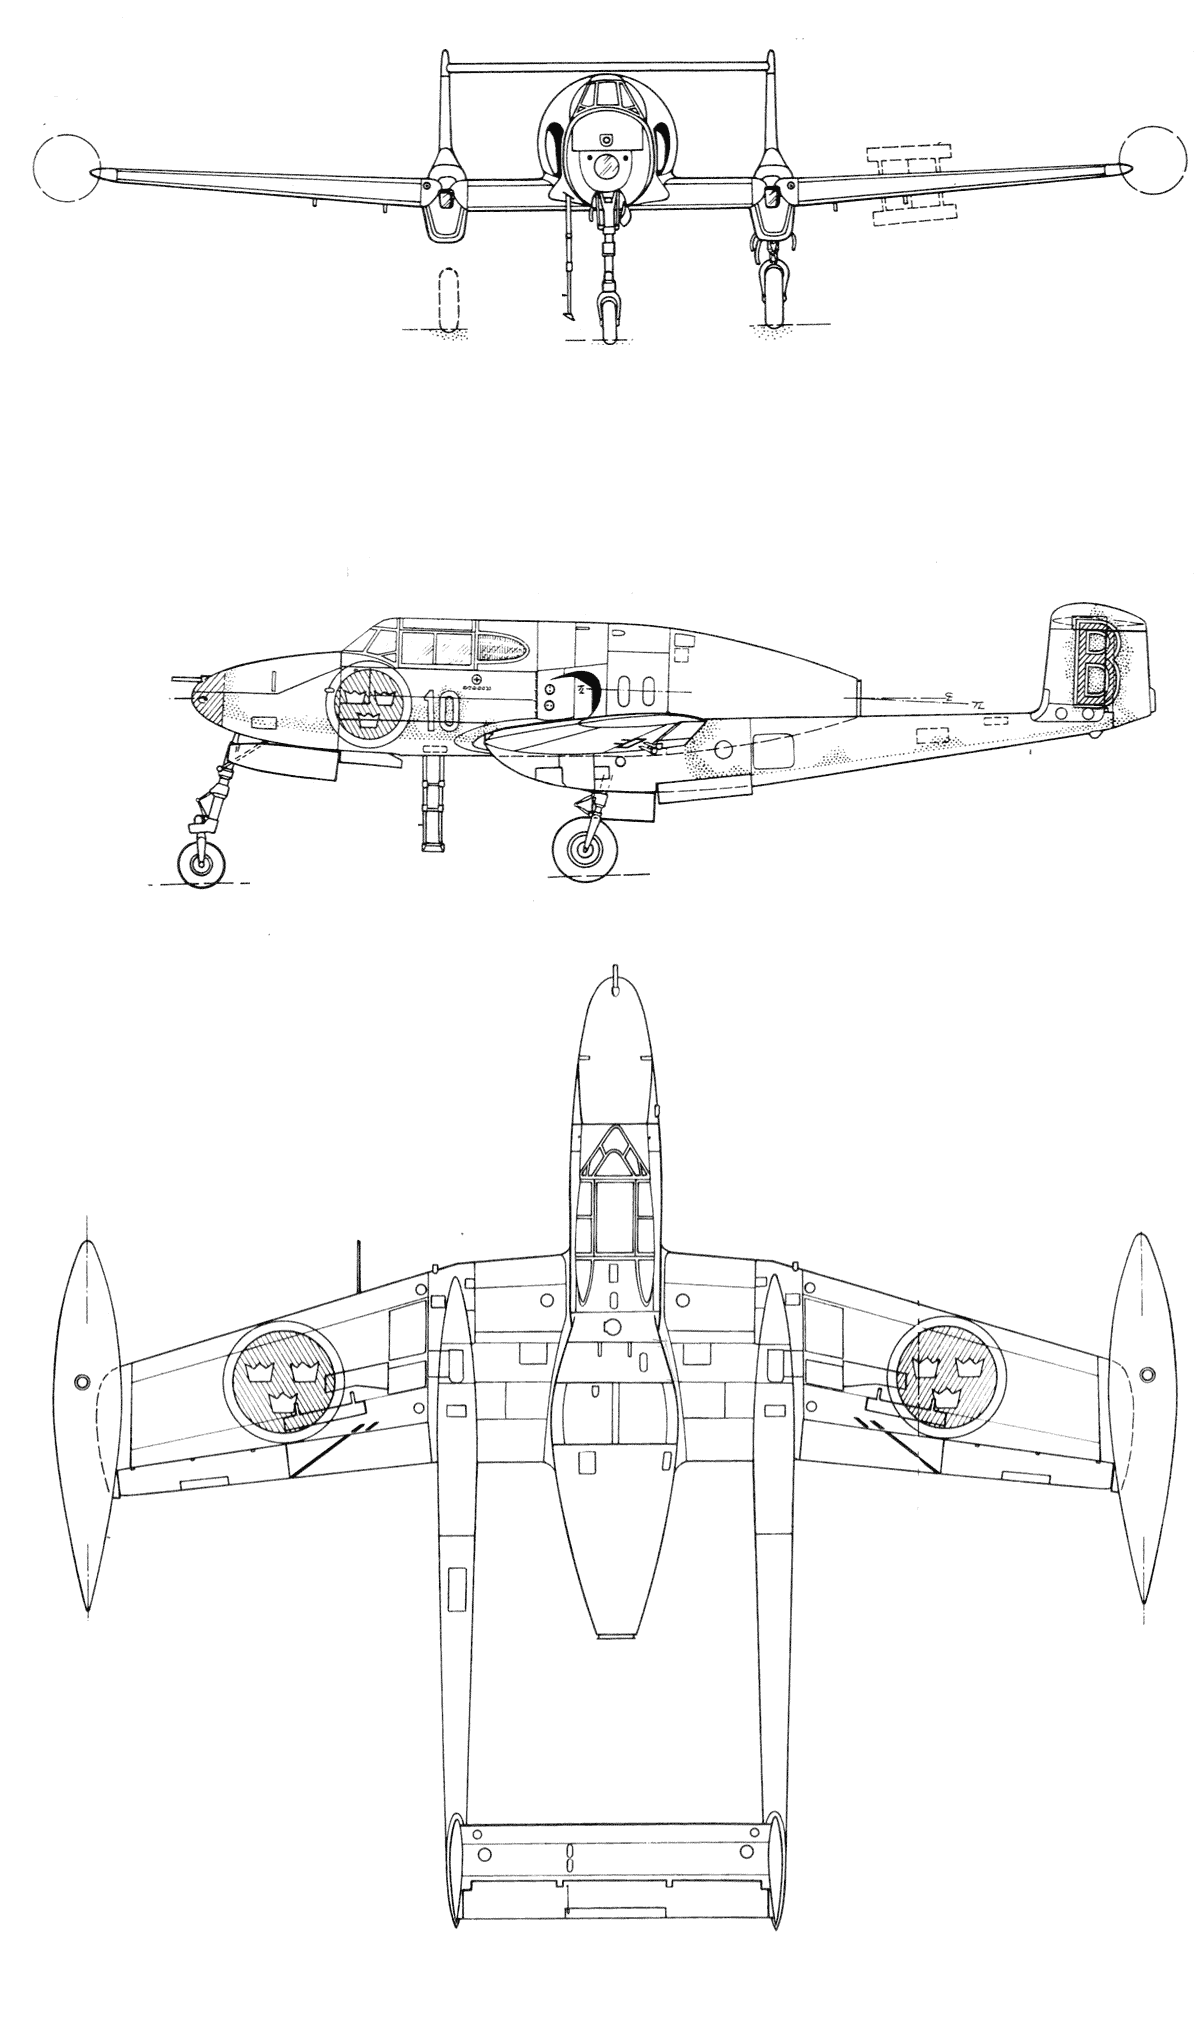 Saab 21 blueprint